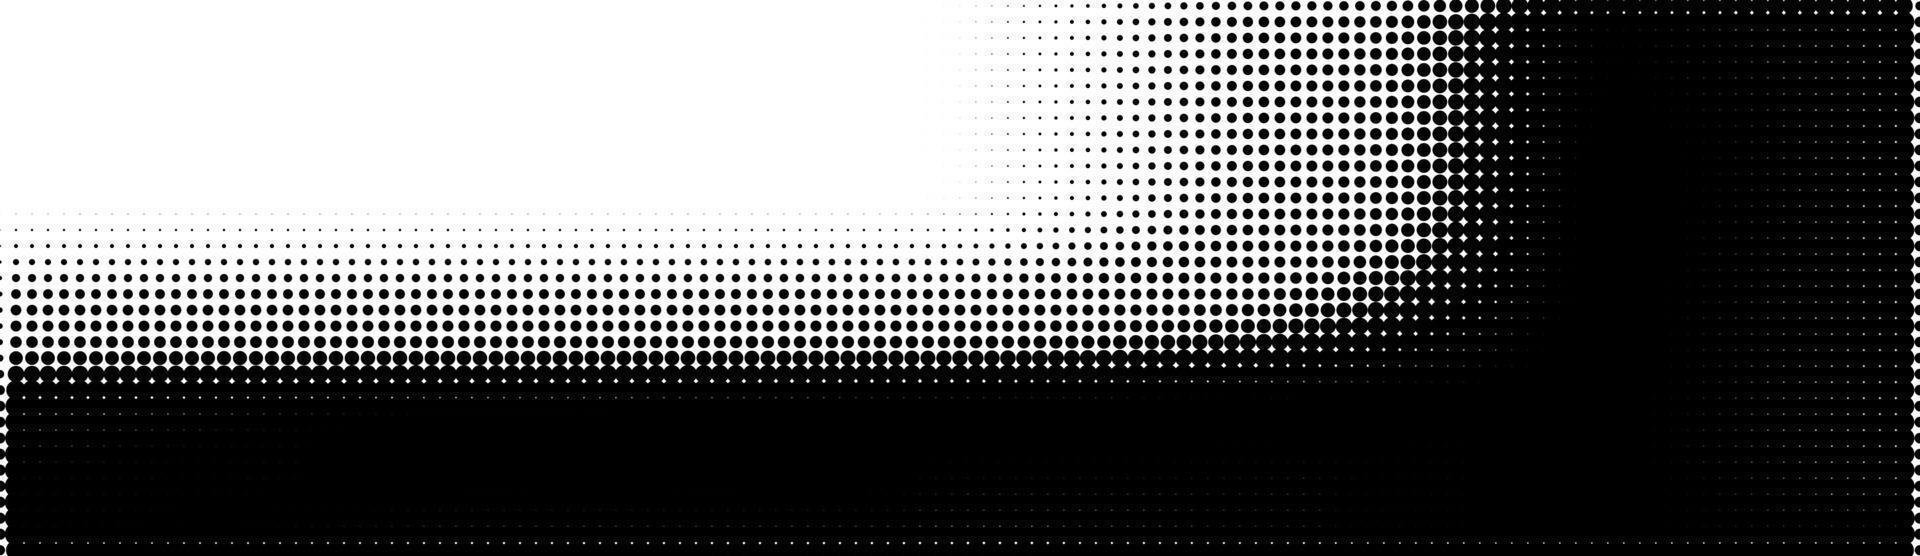 meio-tom em estilo abstrato. textura de vetor geométrico banner retro. impressão moderna. fundo branco e preto. efeito de luz